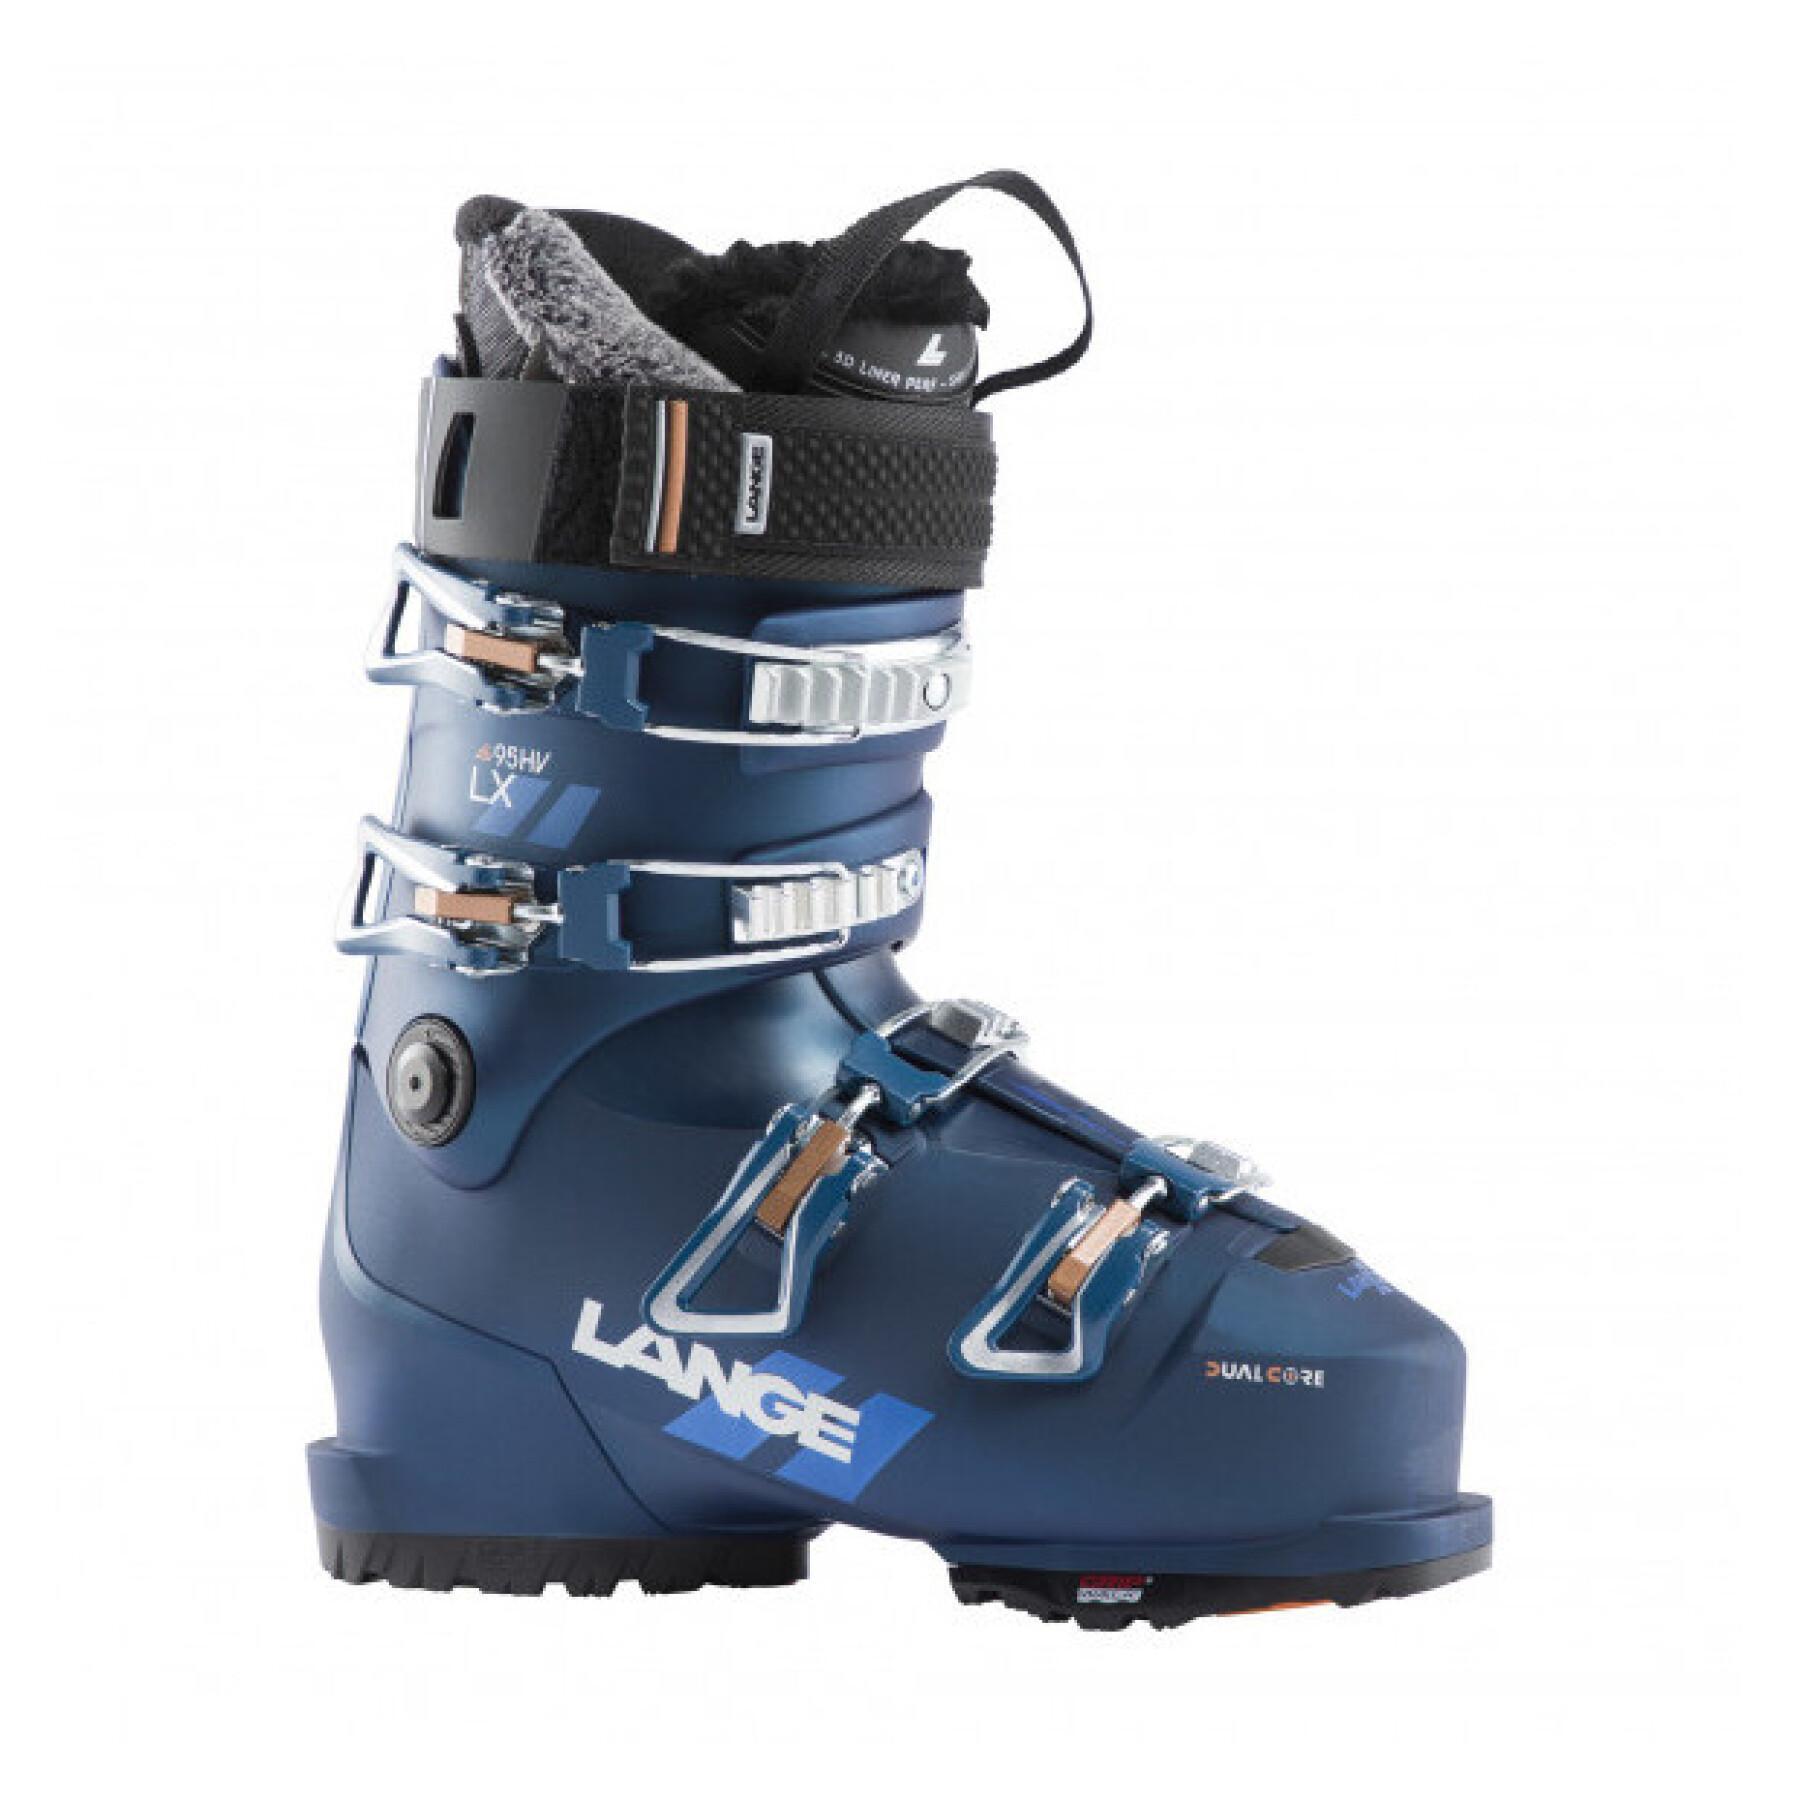 Chaussures de ski Lange LX 95 HV GW